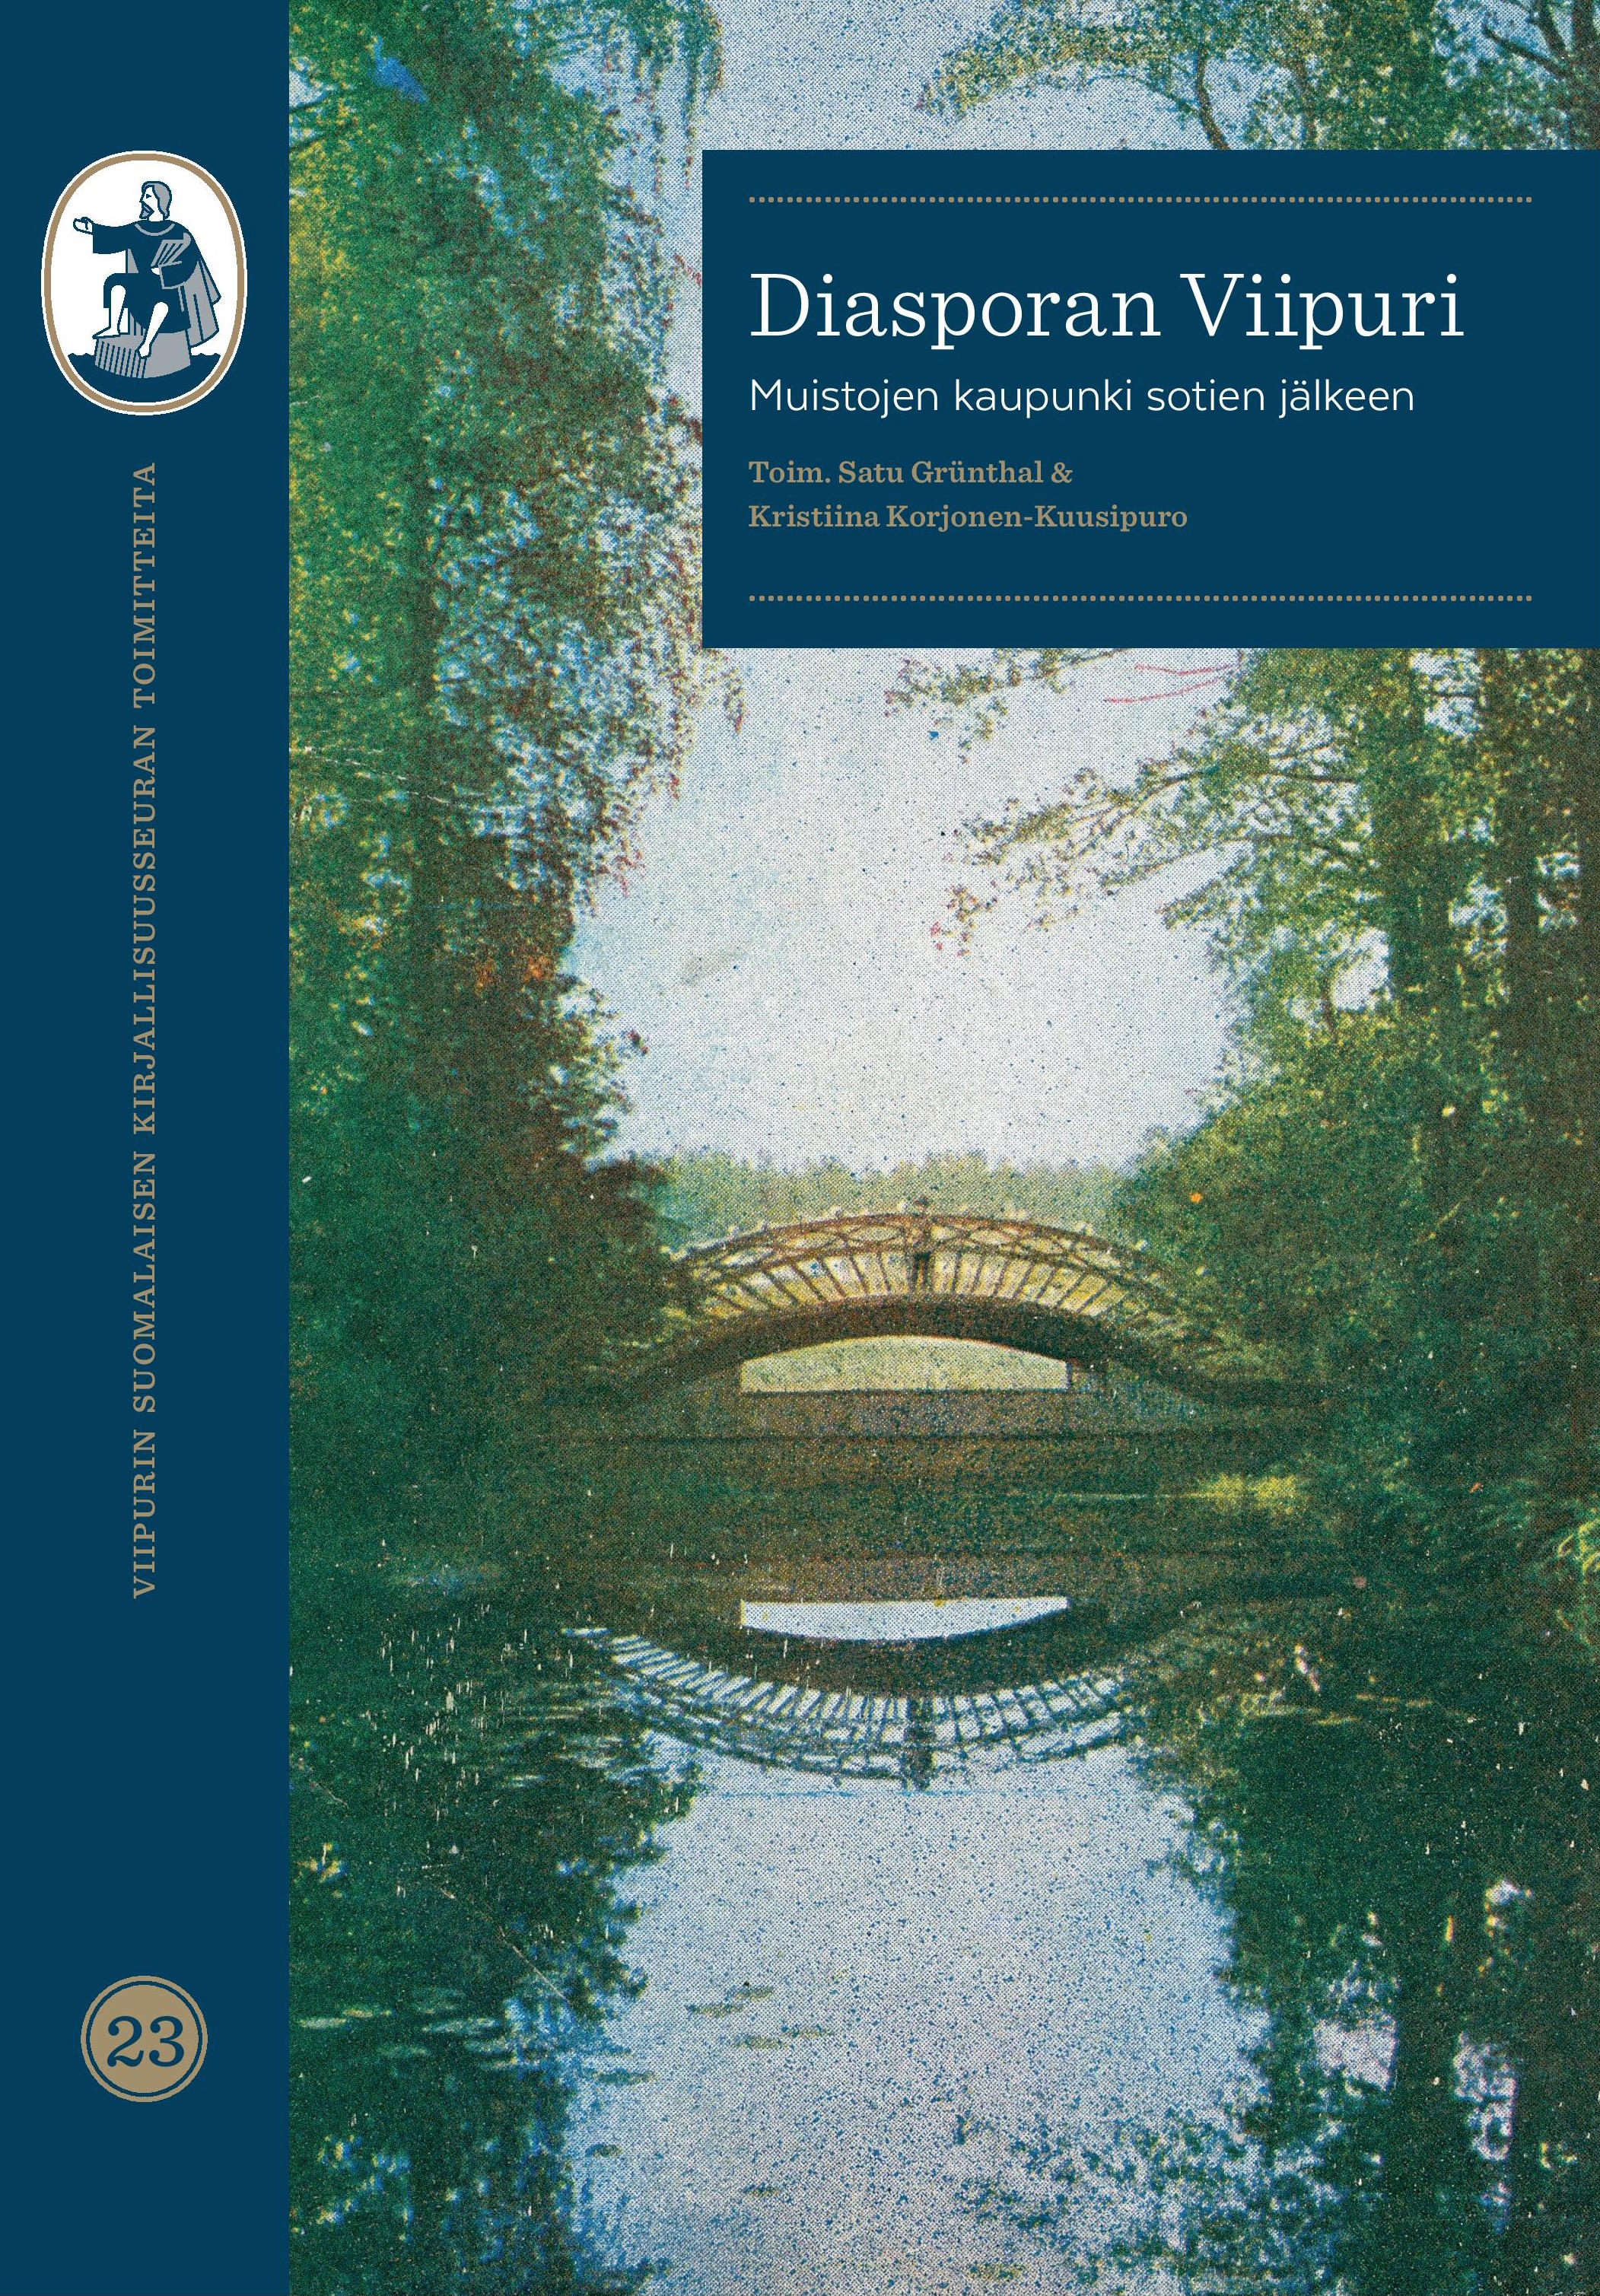 					Näytä Vol 23 Nro 23 (2021): Viipurin Suomalaisen Kirjallisuusseuran toimitteita 23:  Diasporan Viipuri – Muistojen kaupunki sotien jälkeen
				